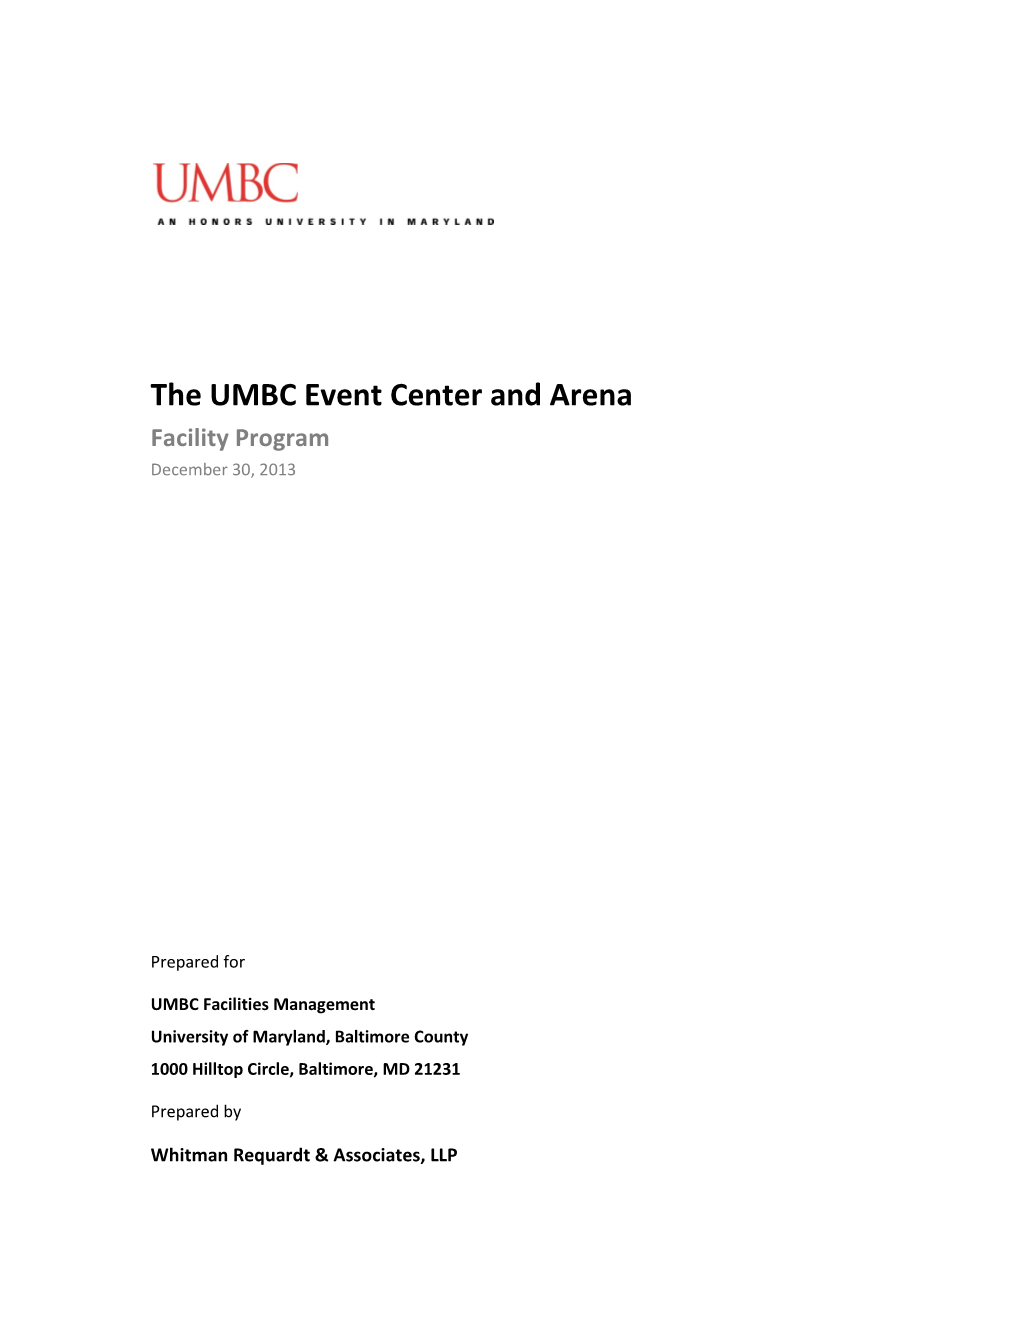 The UMBC Event Center and Arena Facility Program December 30, 2013